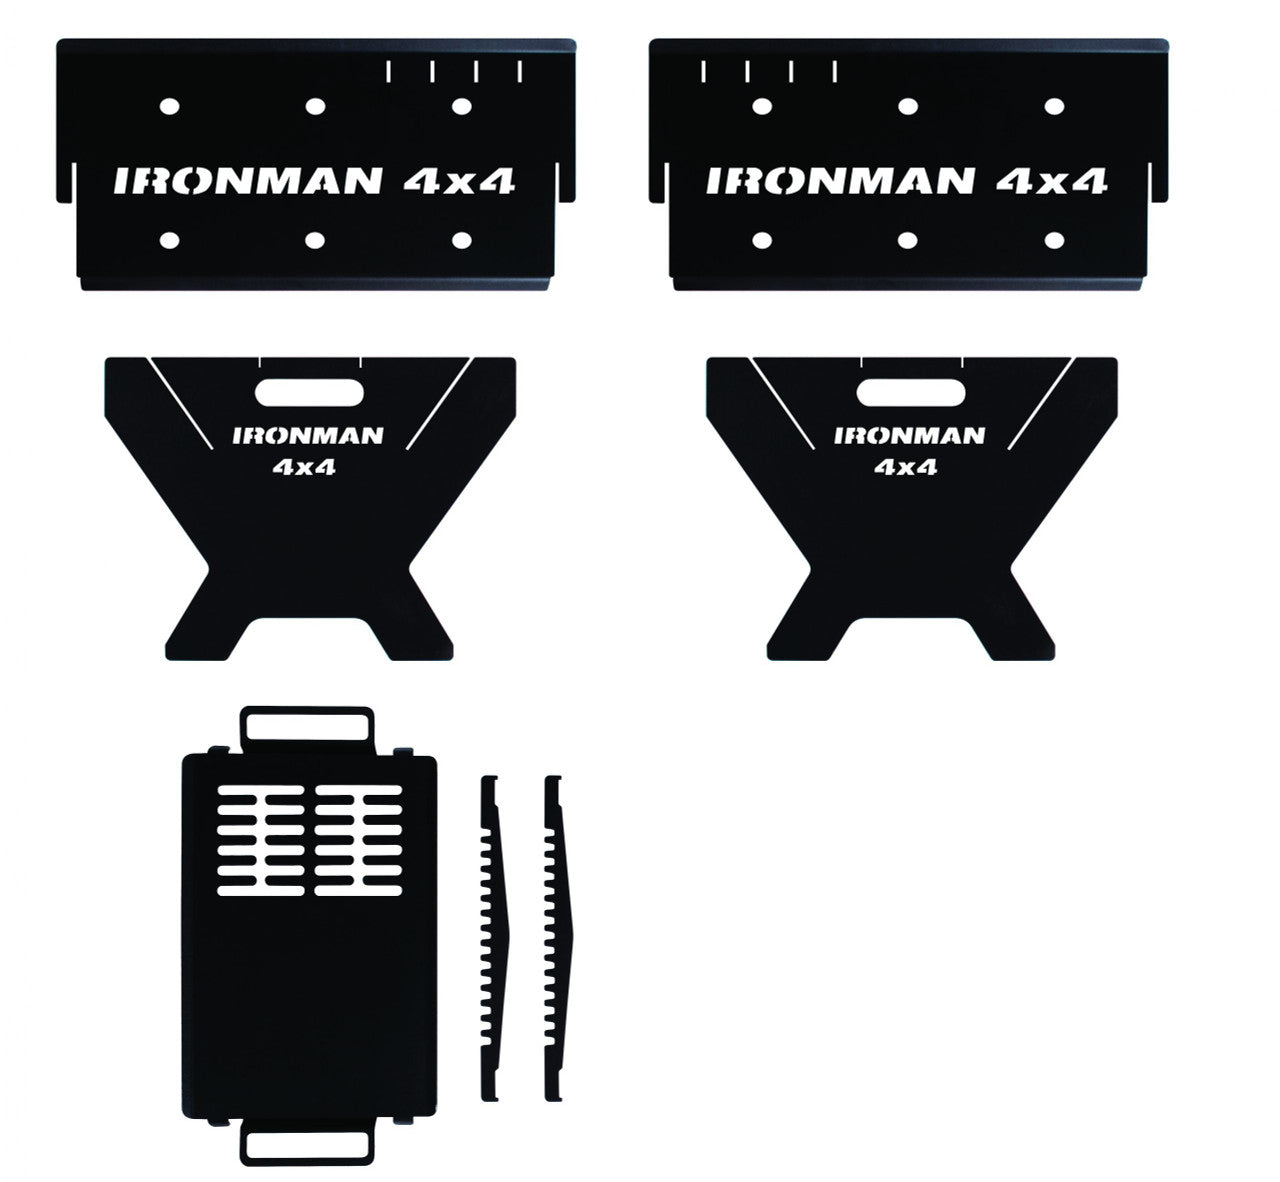 Ironman 4x4 Portable Fire Pit